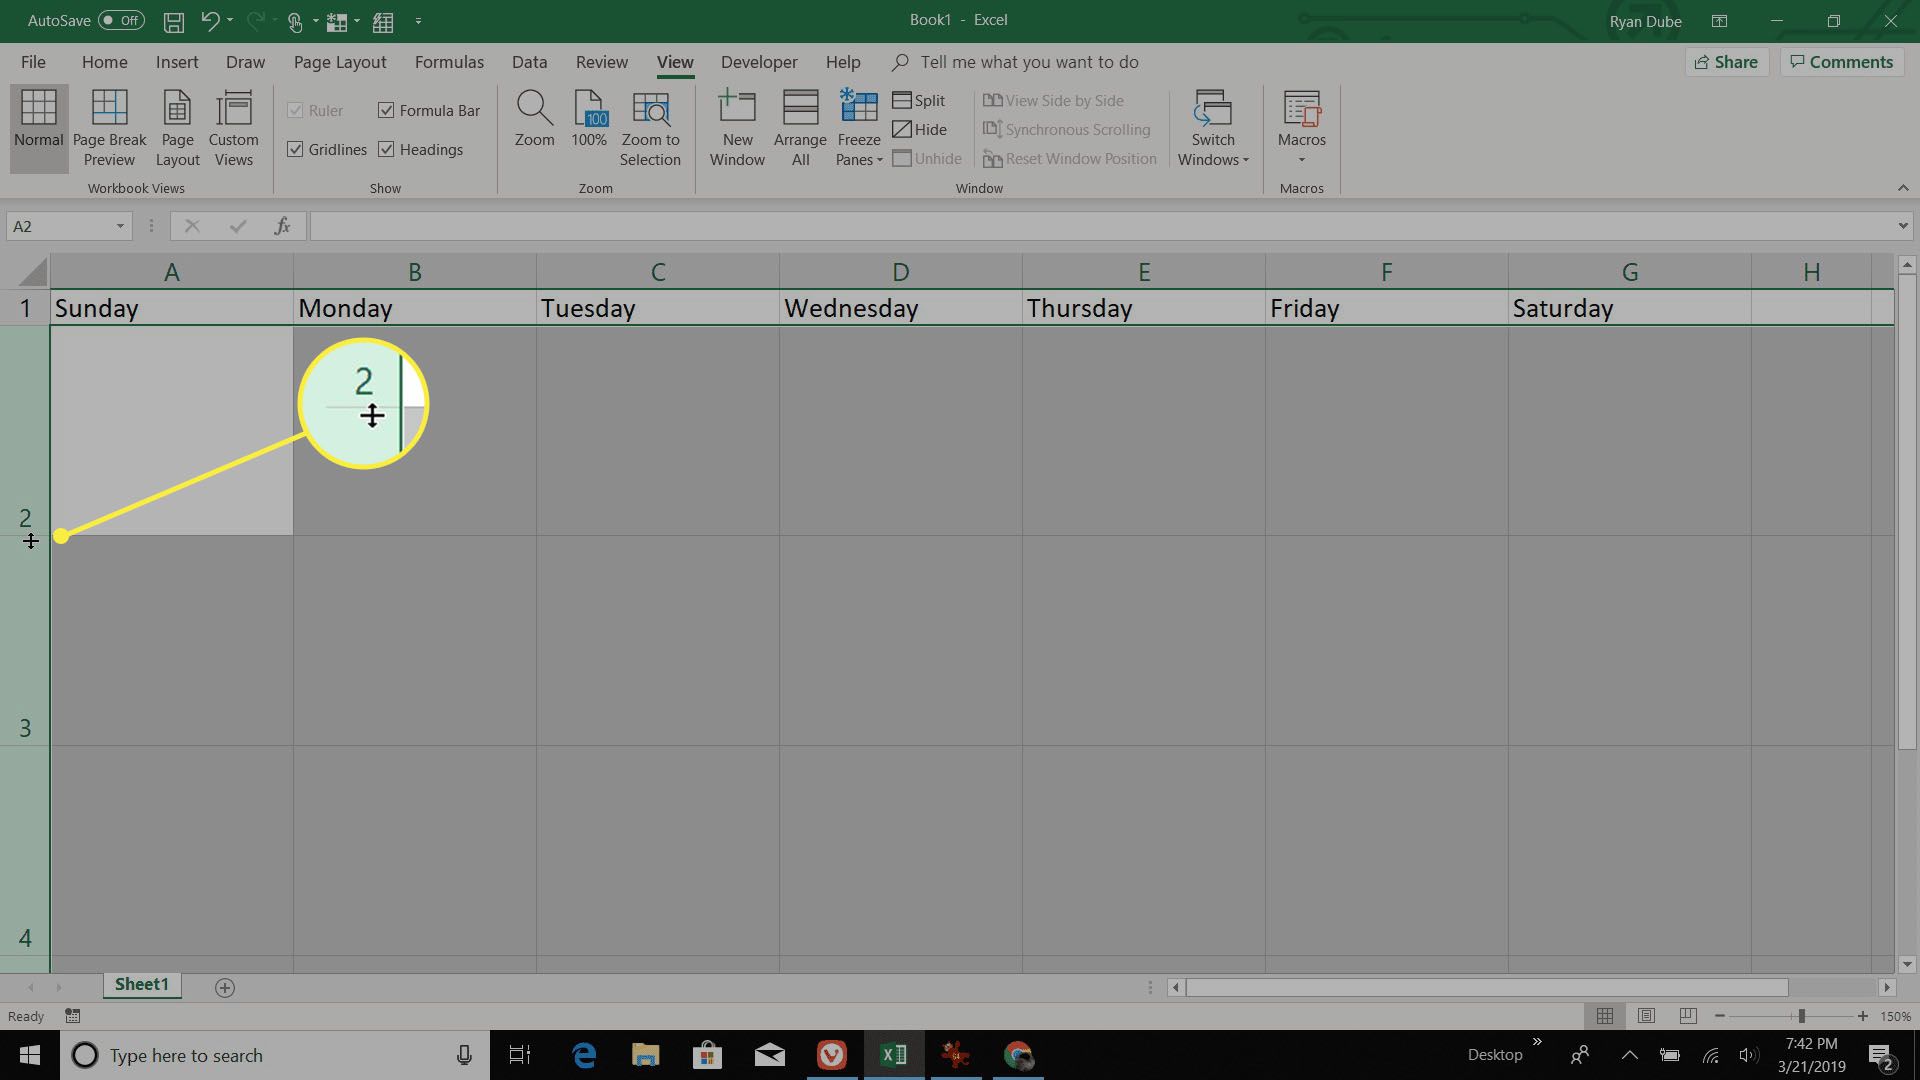 úprava výšek řádků kalendáře v aplikaci Excel